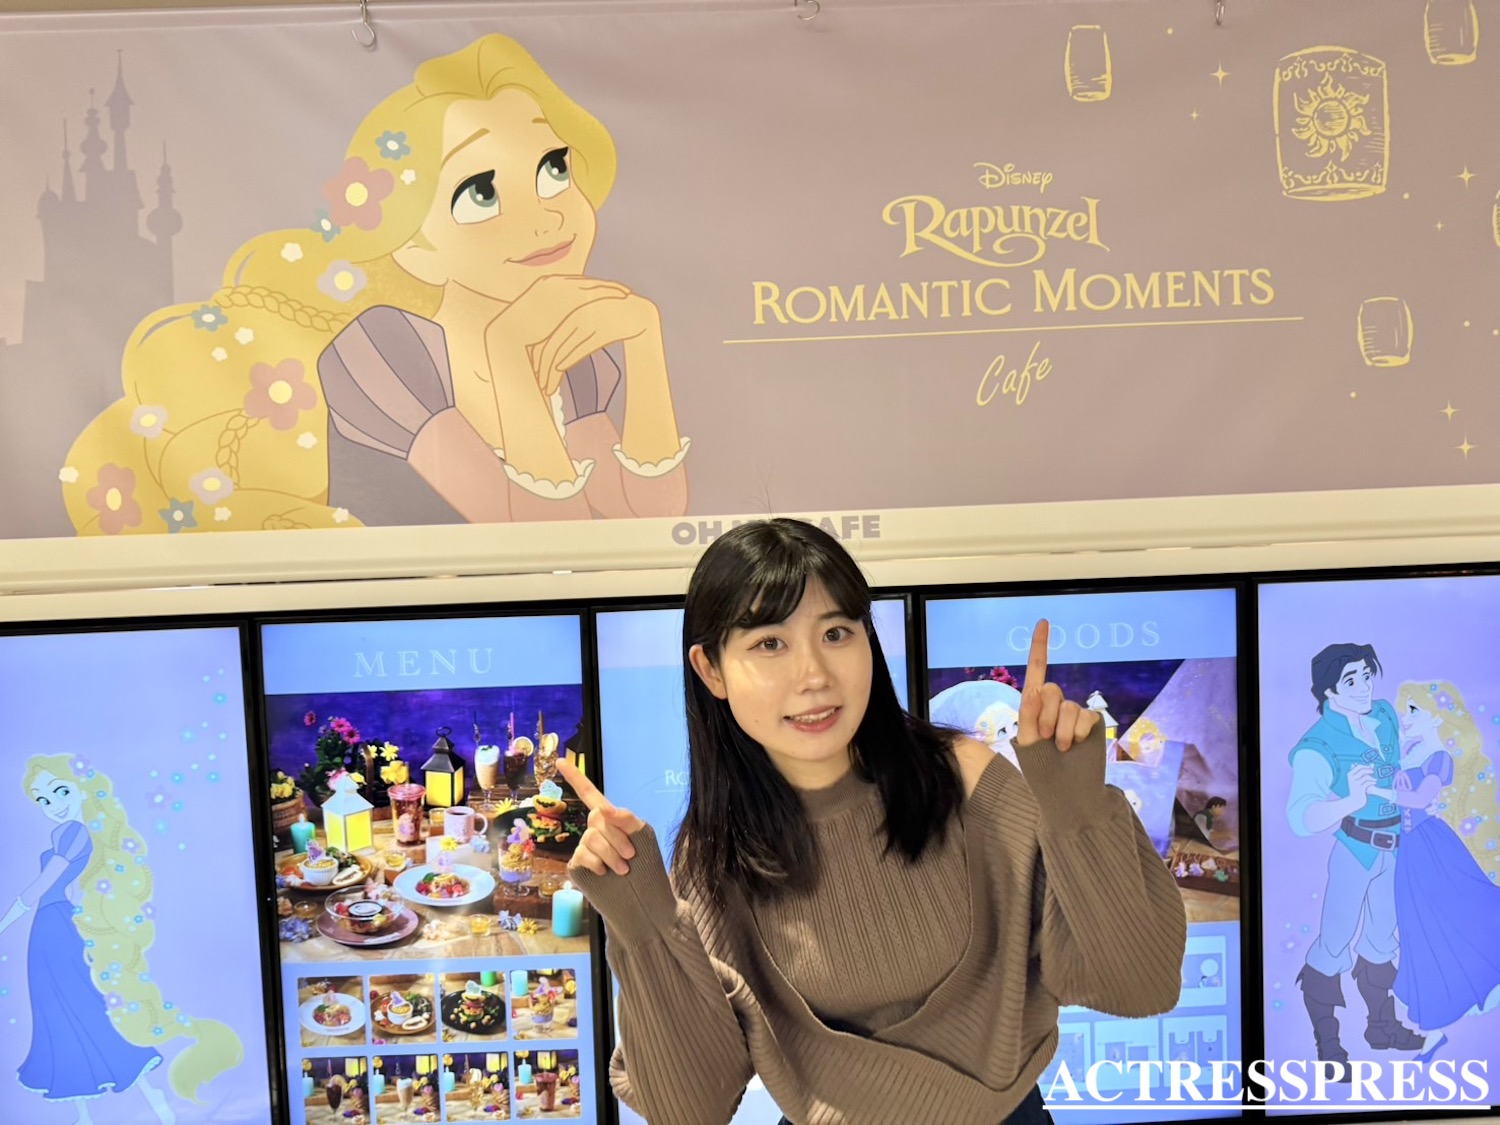 清水乃里樺／ACTRESS PRESS REPORTER（アクトレスプレス リポーター）in 「Rapunzel」Romantic Moments OH MY CAFE